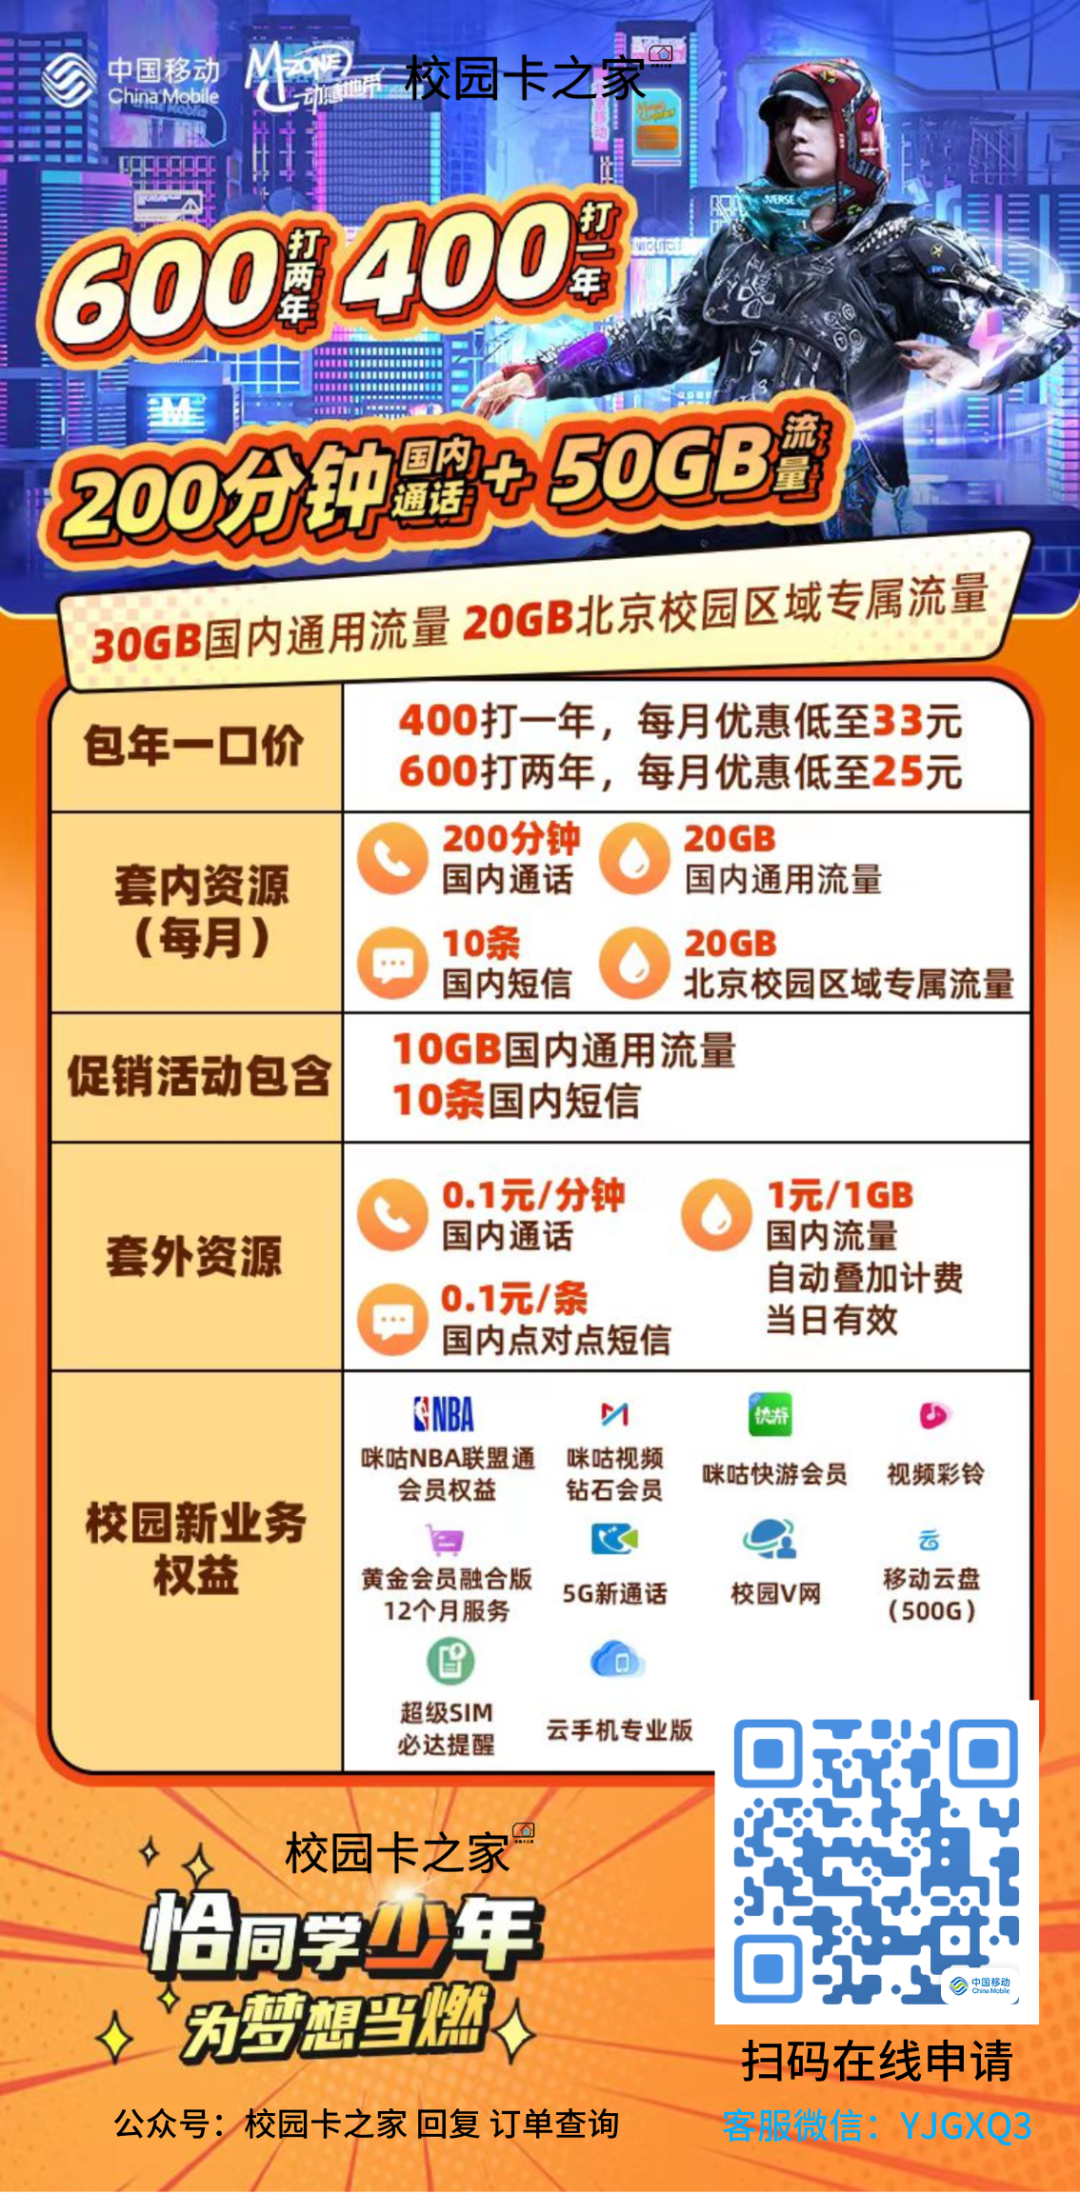 北京广电校园卡500包两年每月300分钟+190G流量套餐截图插图10